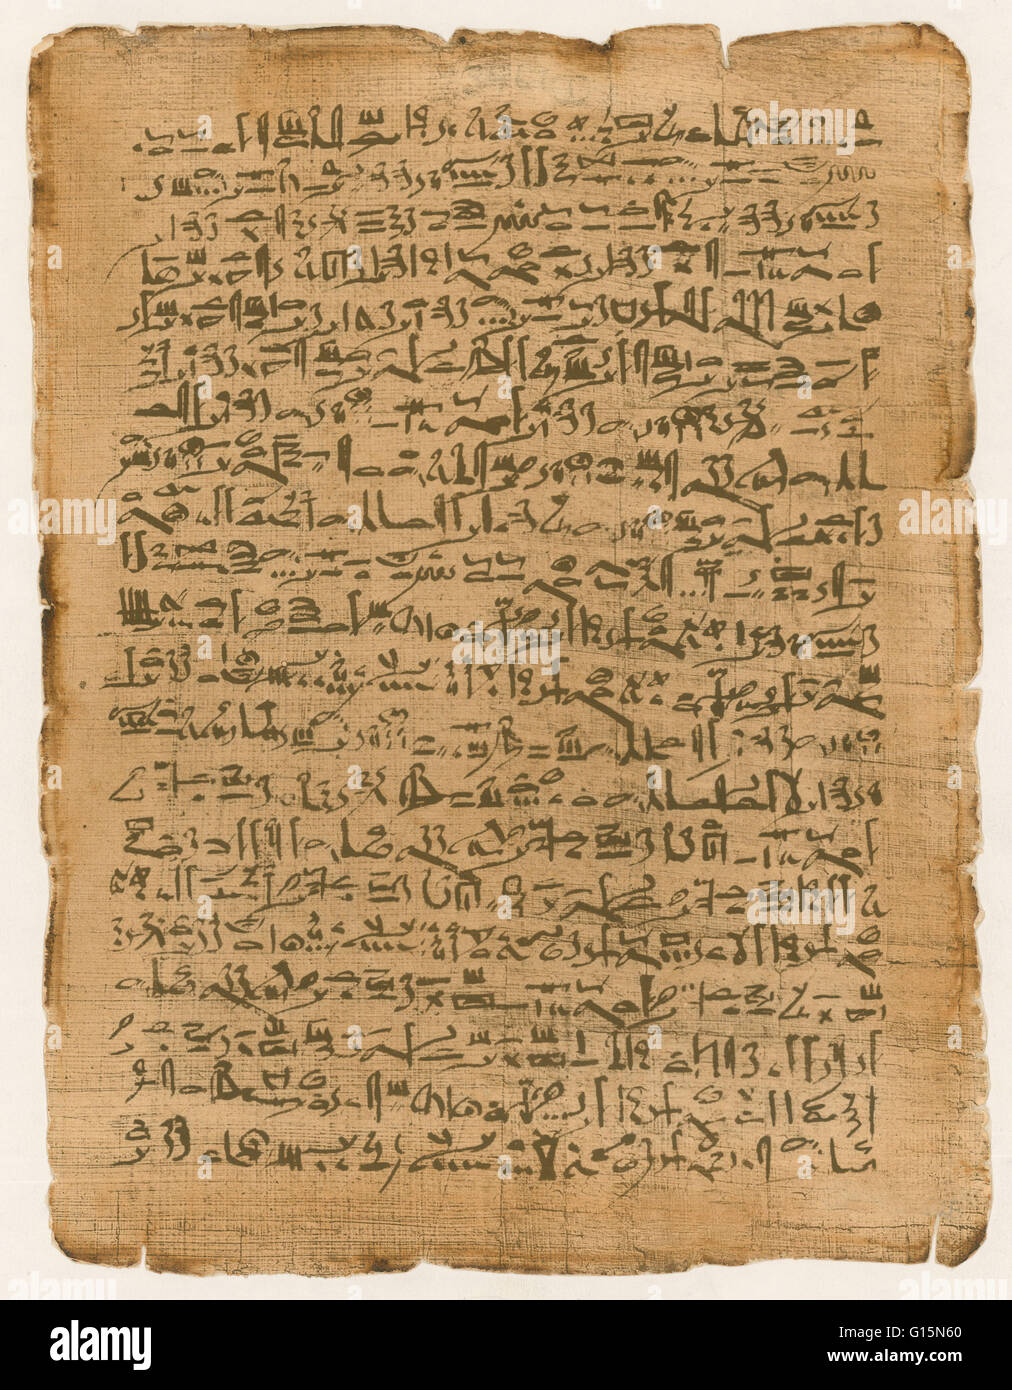 Papyrus ist ein dickes Papier-wie Material, aus dem Mark der Papyrusstaude, Cyperus Papyrus, ein Feuchtgebiet-Segge, die einst reiche im Nil-Delta von Ägypten war hergestellt. Papyrus ist zuerst bekannt, im alten Ägypten verwendet wurden, aber es wurde auch verwendet durch Stockfoto